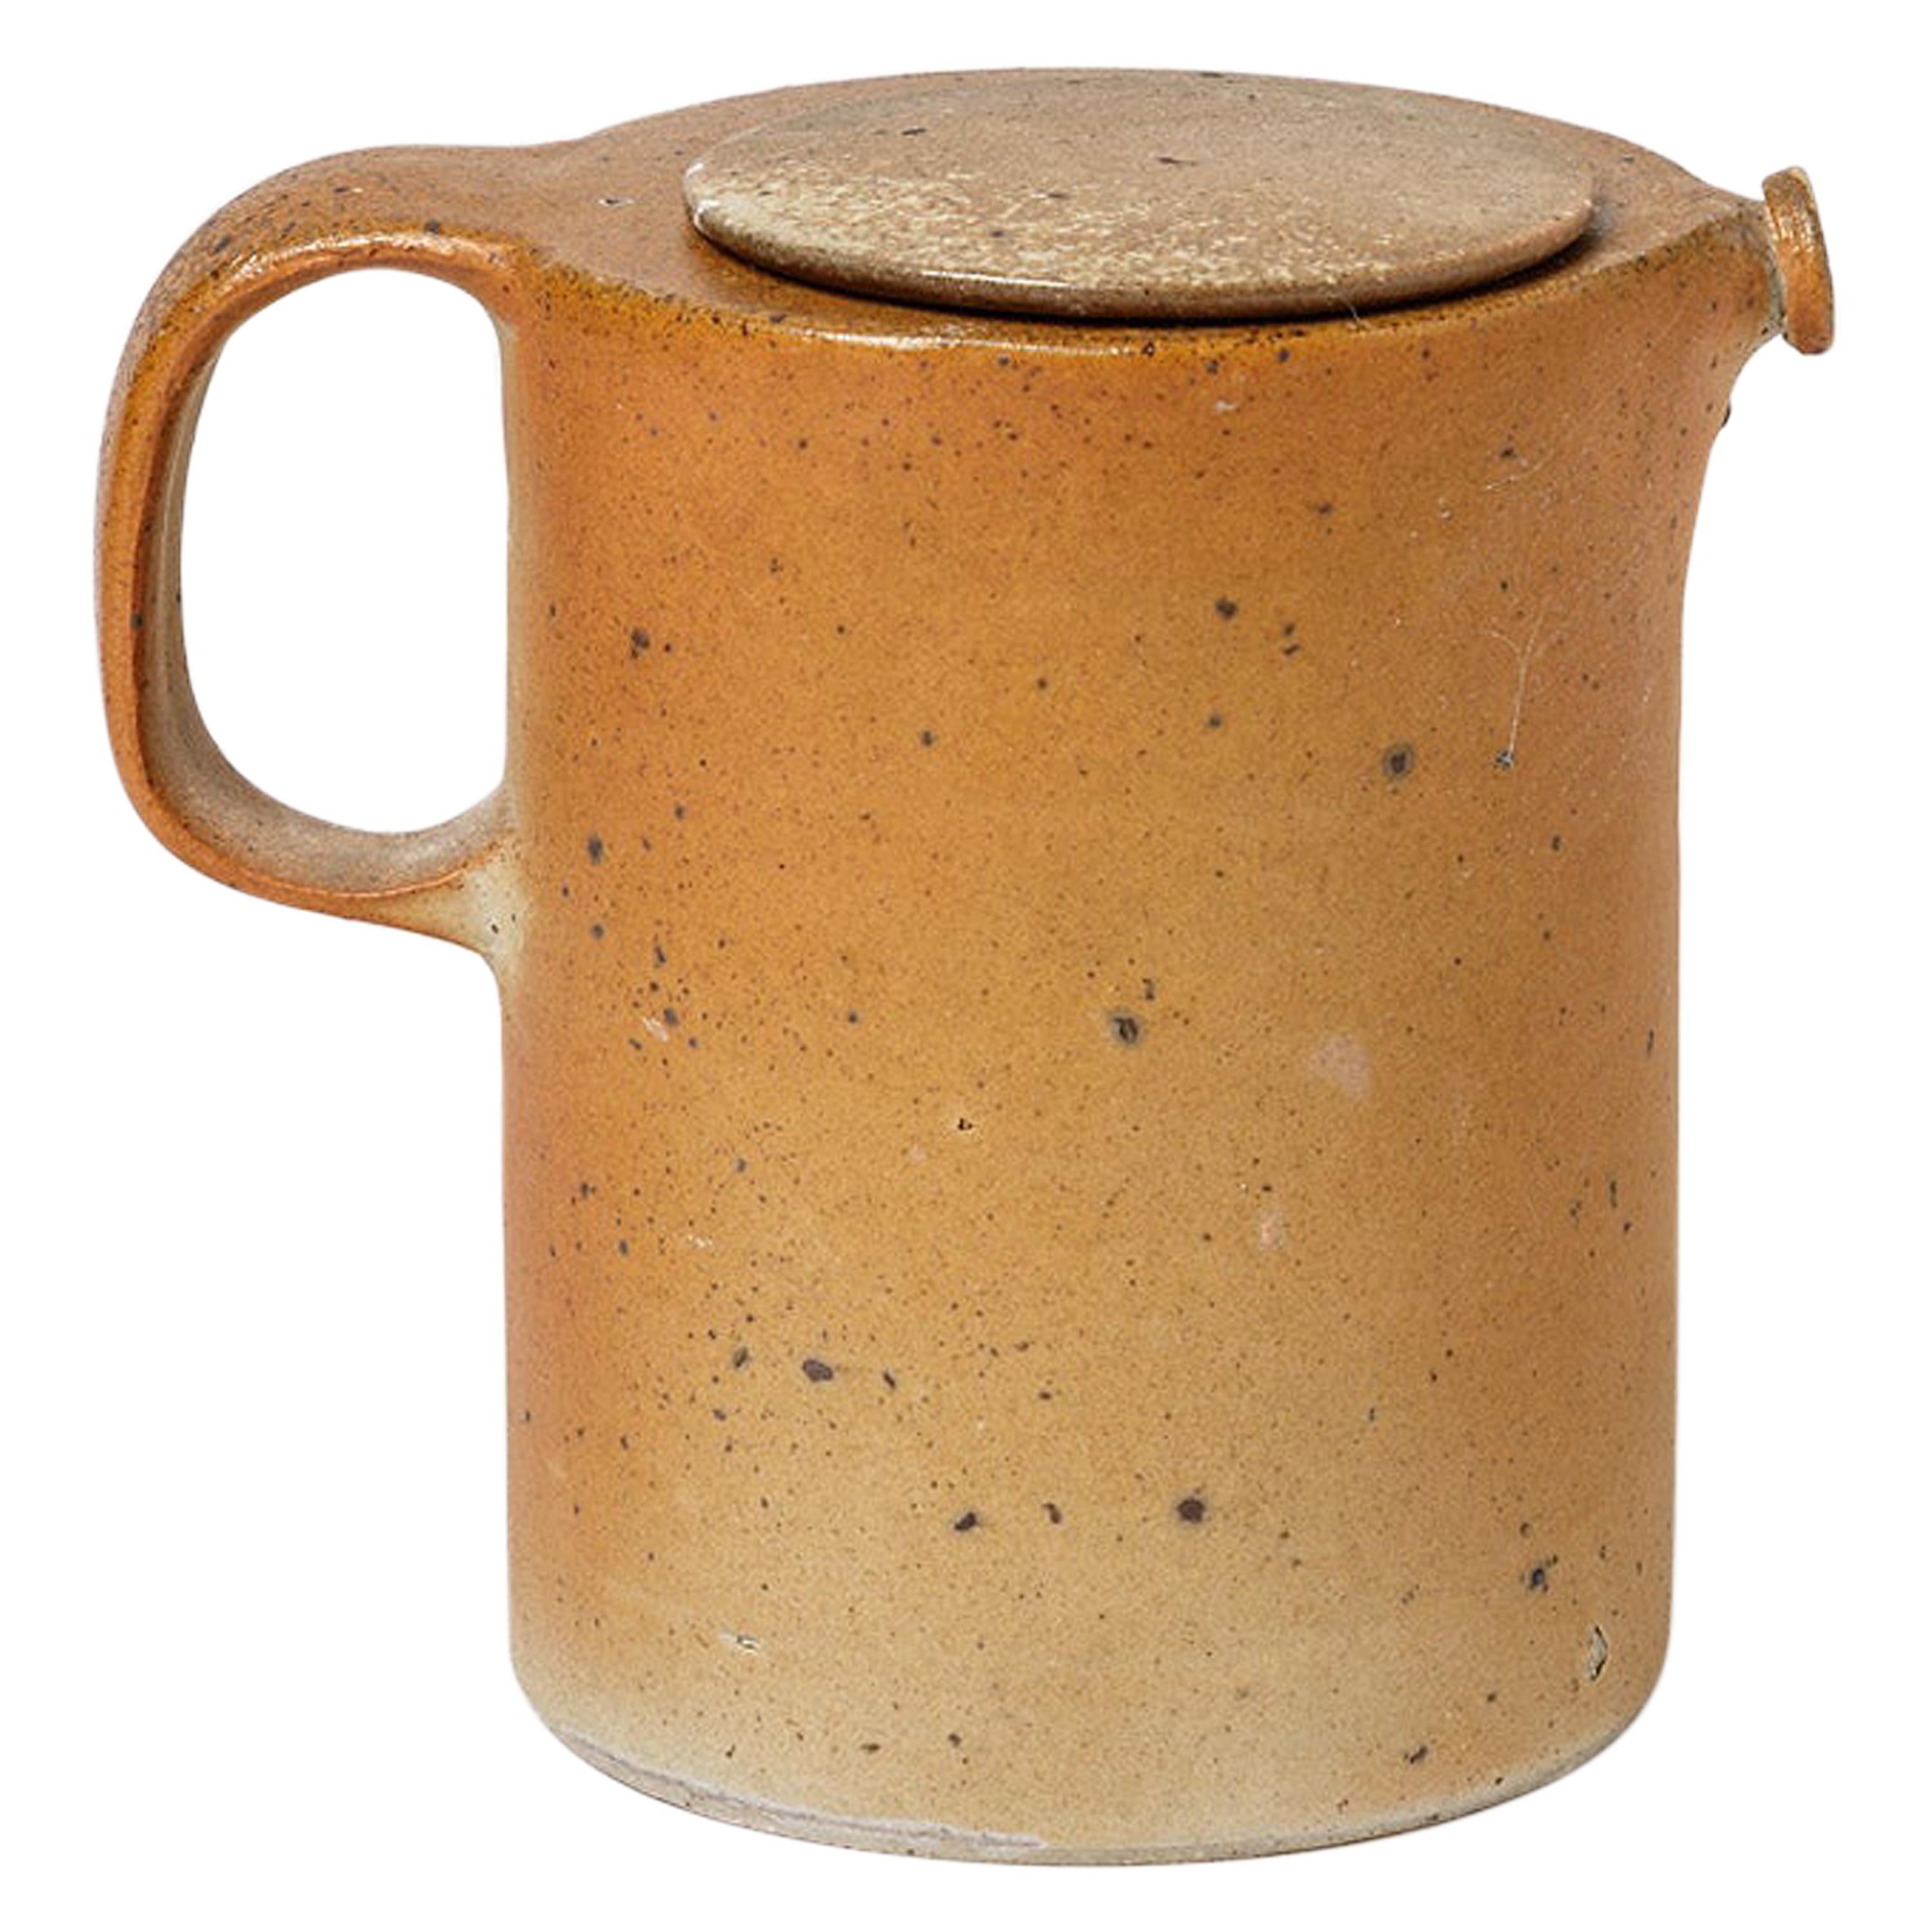 Brown Stoneware Ceramic Tea Pot  1970 20th Century Design 